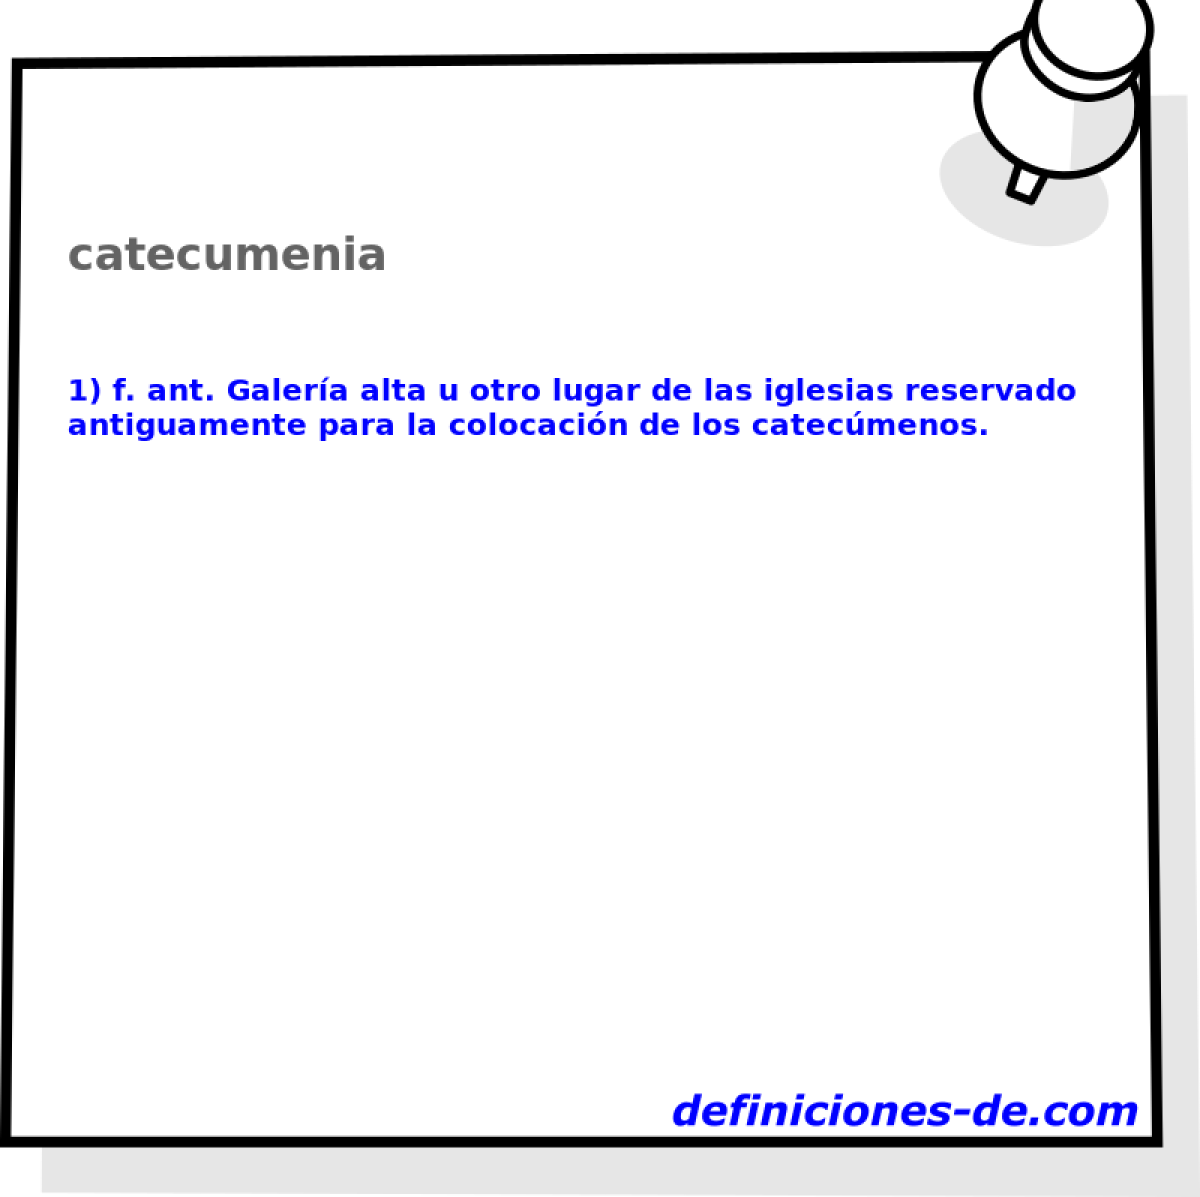 catecumenia 